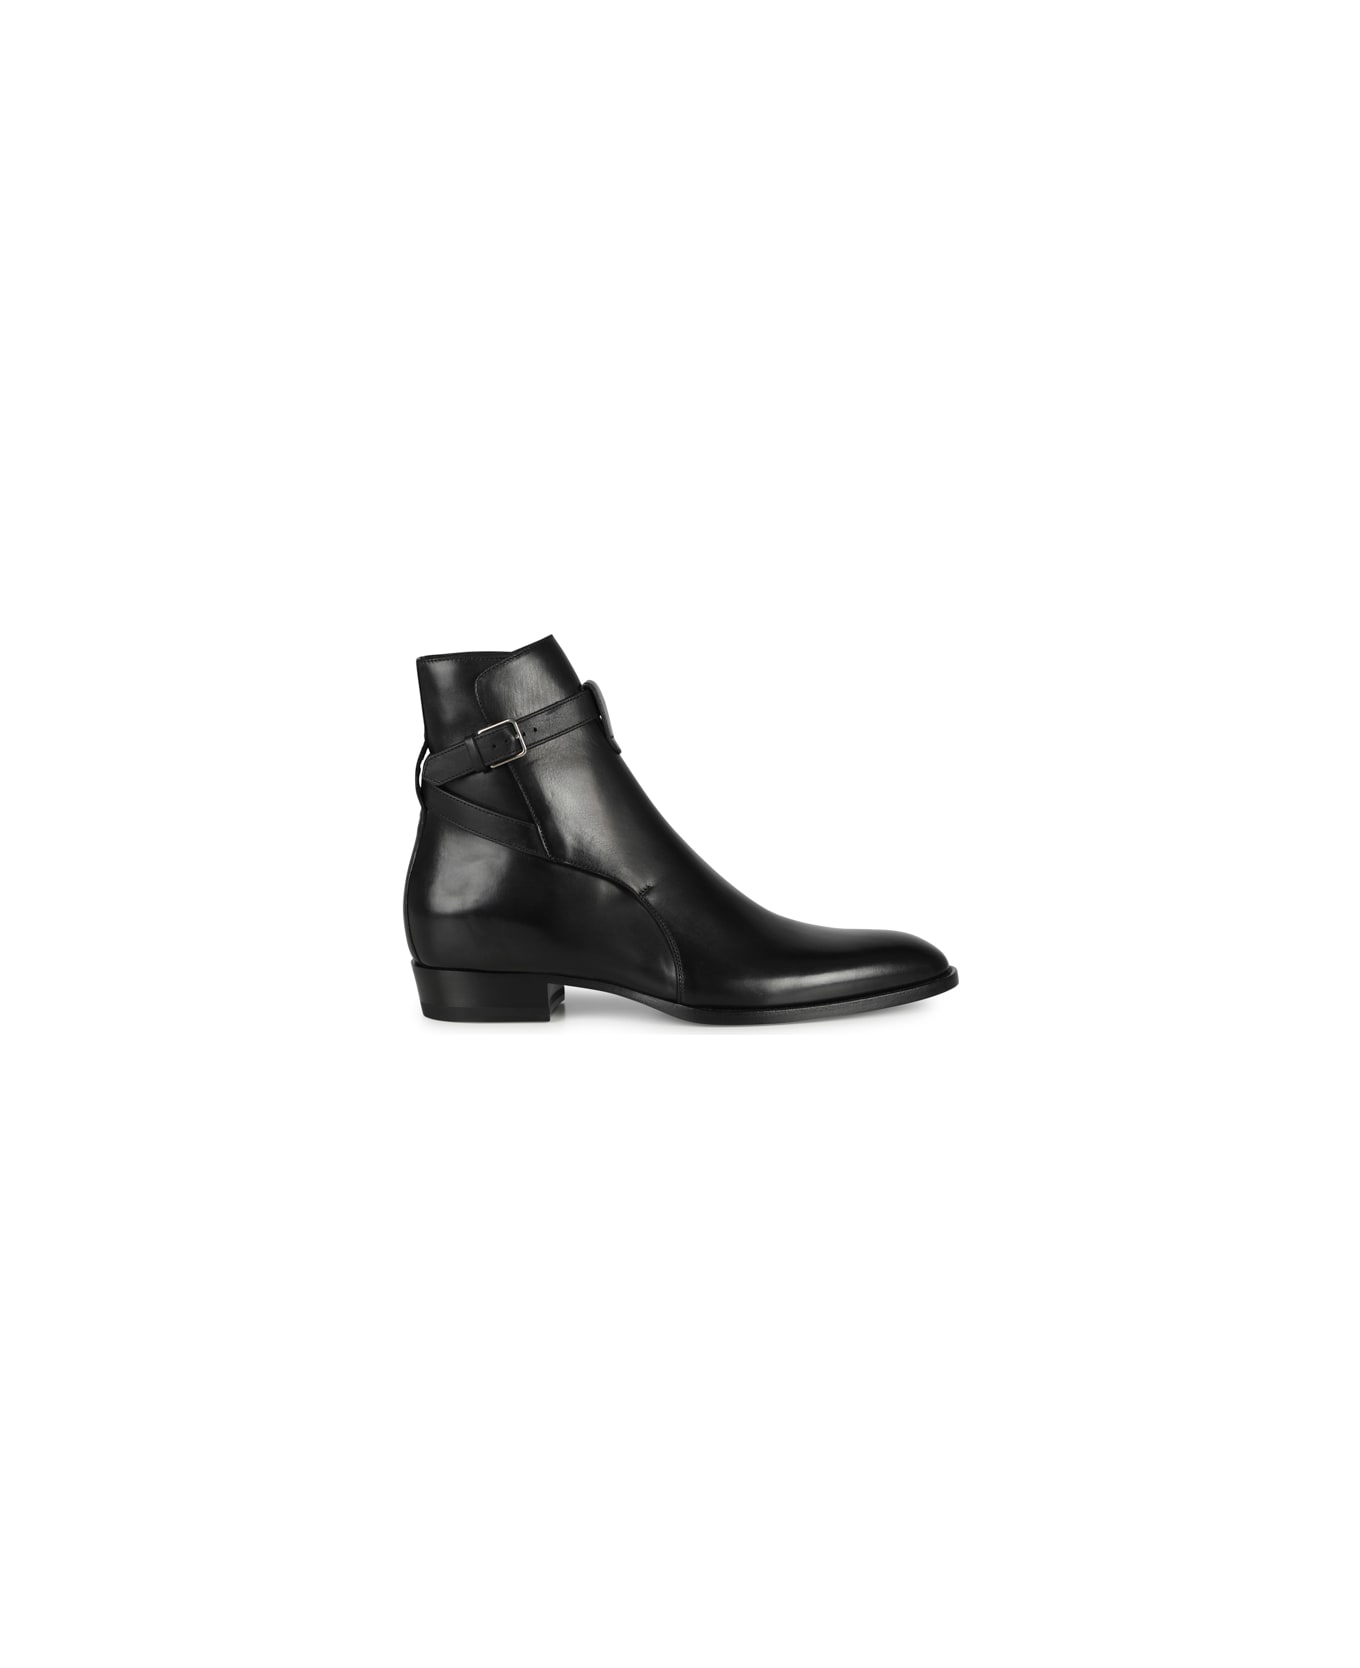 Saint Laurent Wyatt Jodhpur Leather Ankle Boots - Black